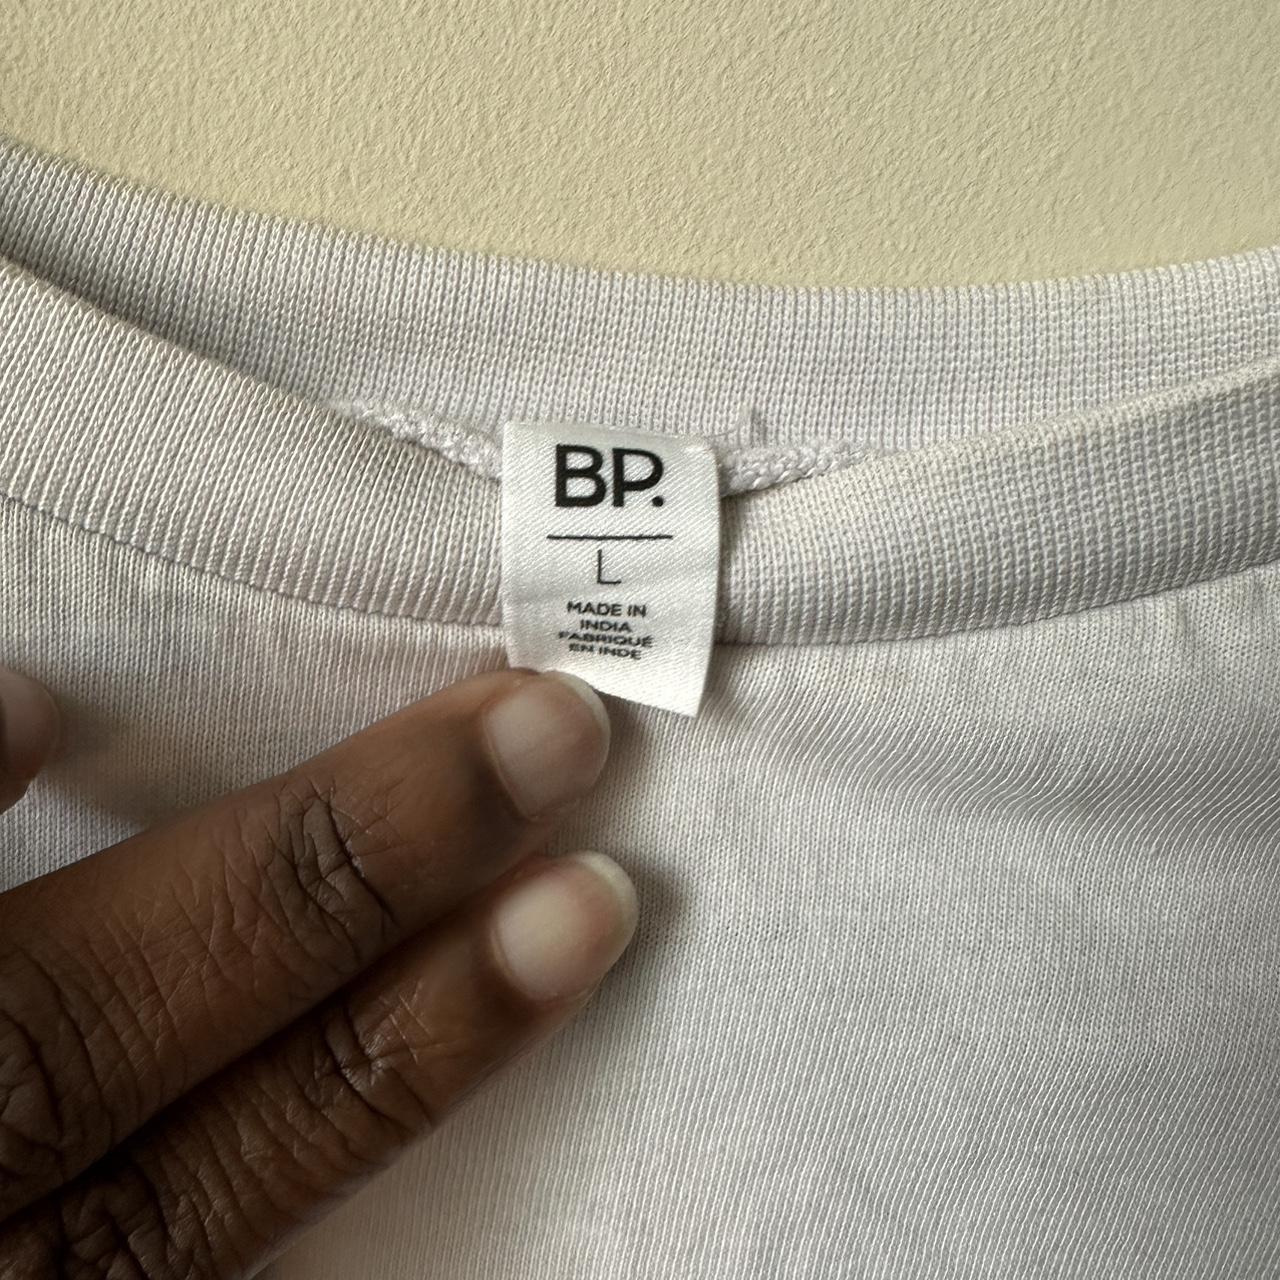 BP Women's Cream and White T-shirt (5)